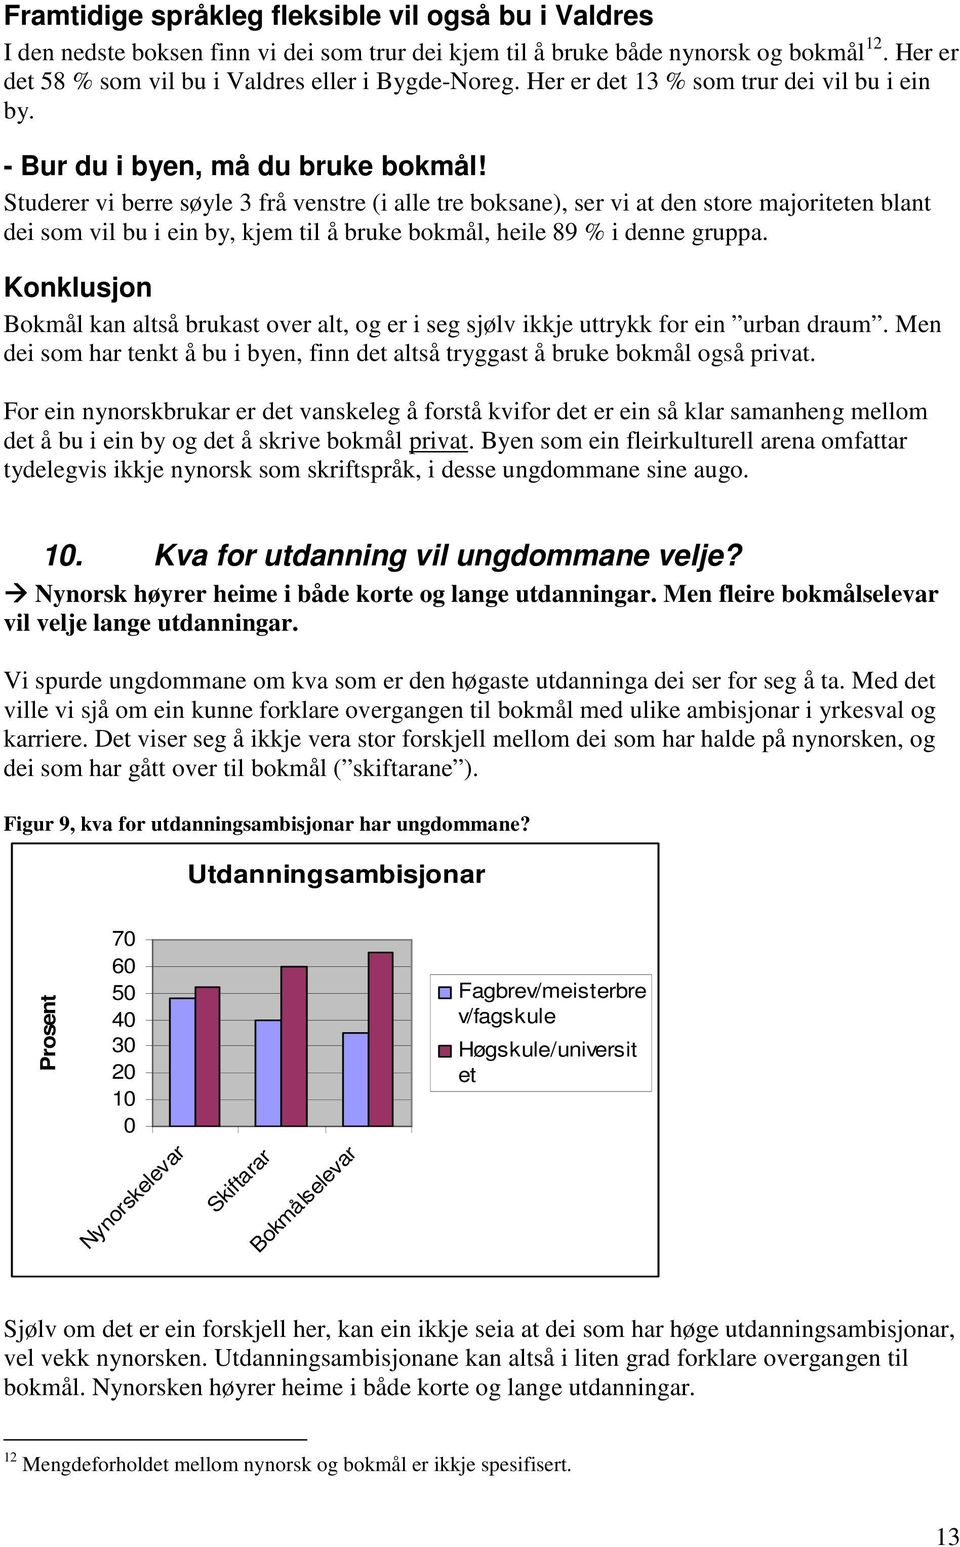 Studerer vi berre søyle 3 frå venstre (i alle tre boksane), ser vi at den store majoriteten blant dei som vil bu i ein by, kjem til å bruke bokmål, heile 89 % i denne gruppa.